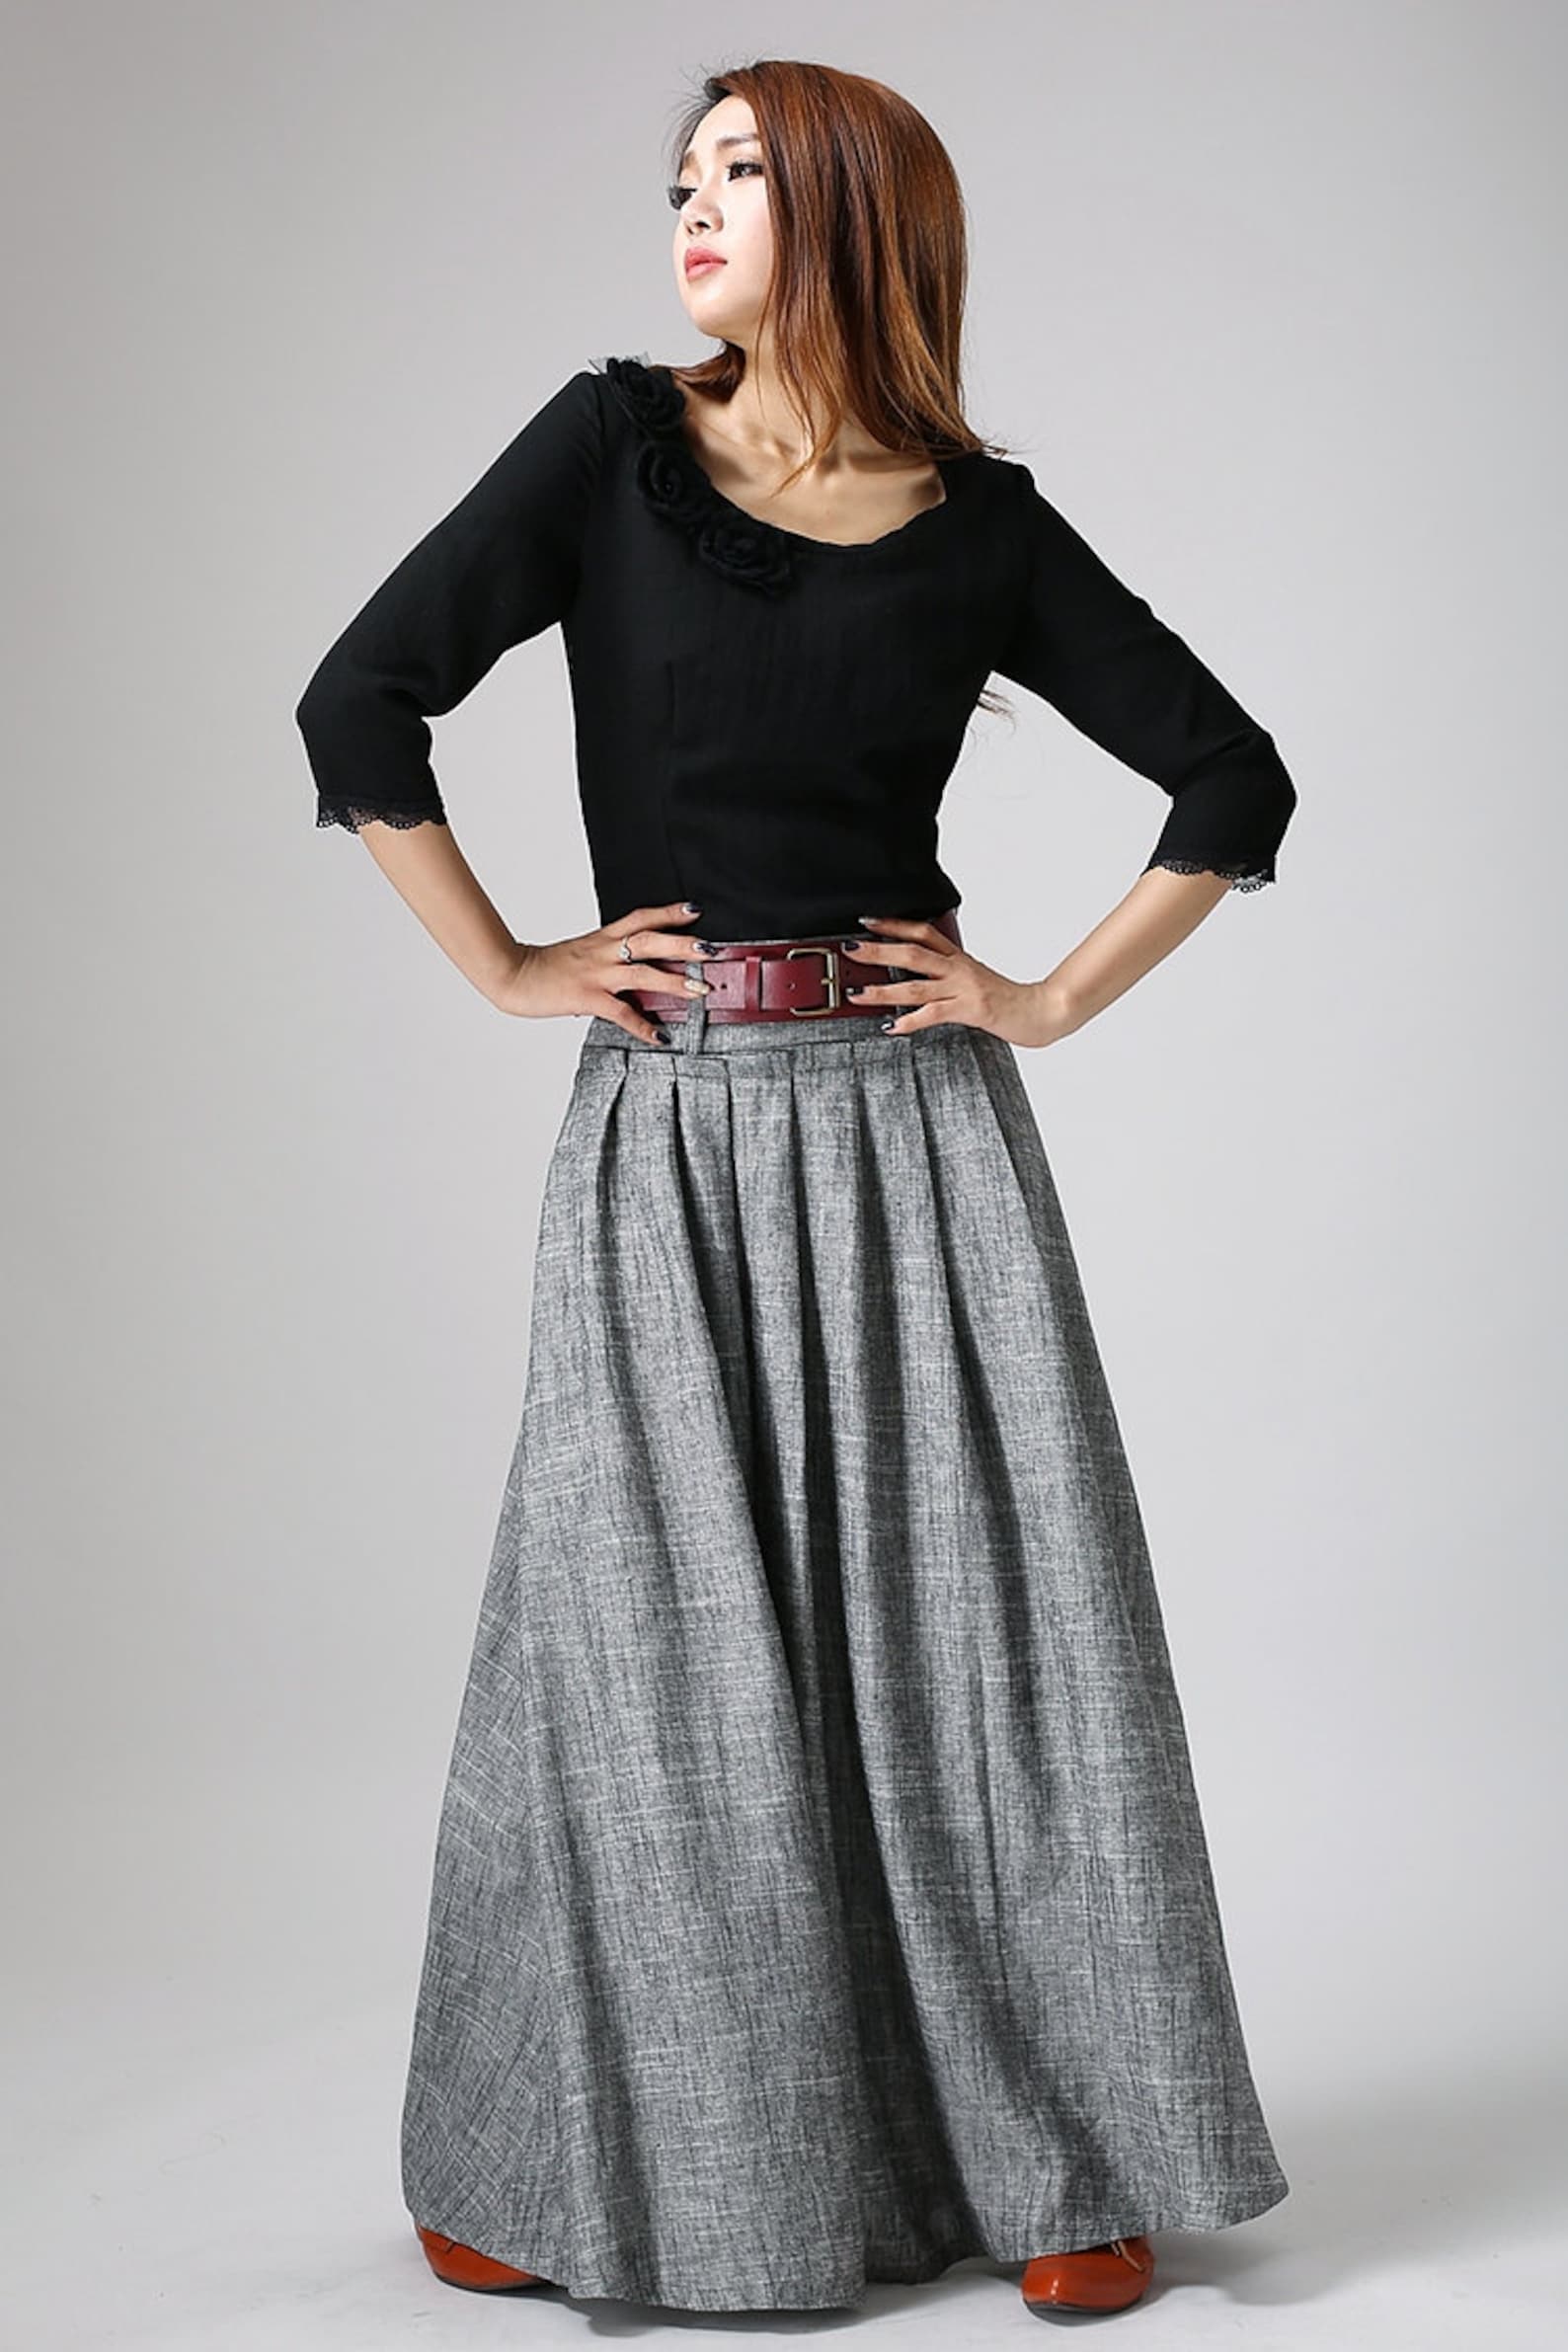 Women Linen Maxi Skirt Swing Long Pleated Skirt Gray Skirt - Etsy